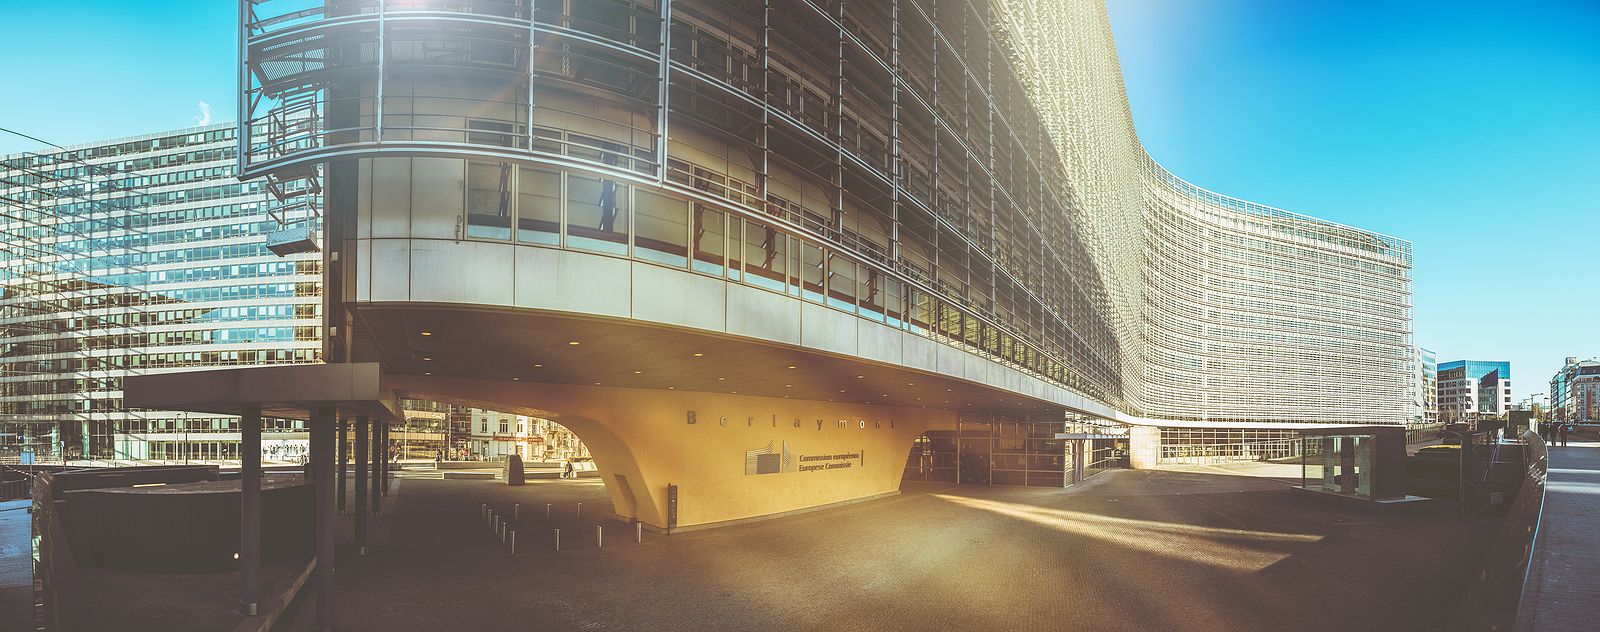 Ya puedes recorrer de manera virtual edificio Berlaymont y otras instituciones europeas (Foto Bigstock)